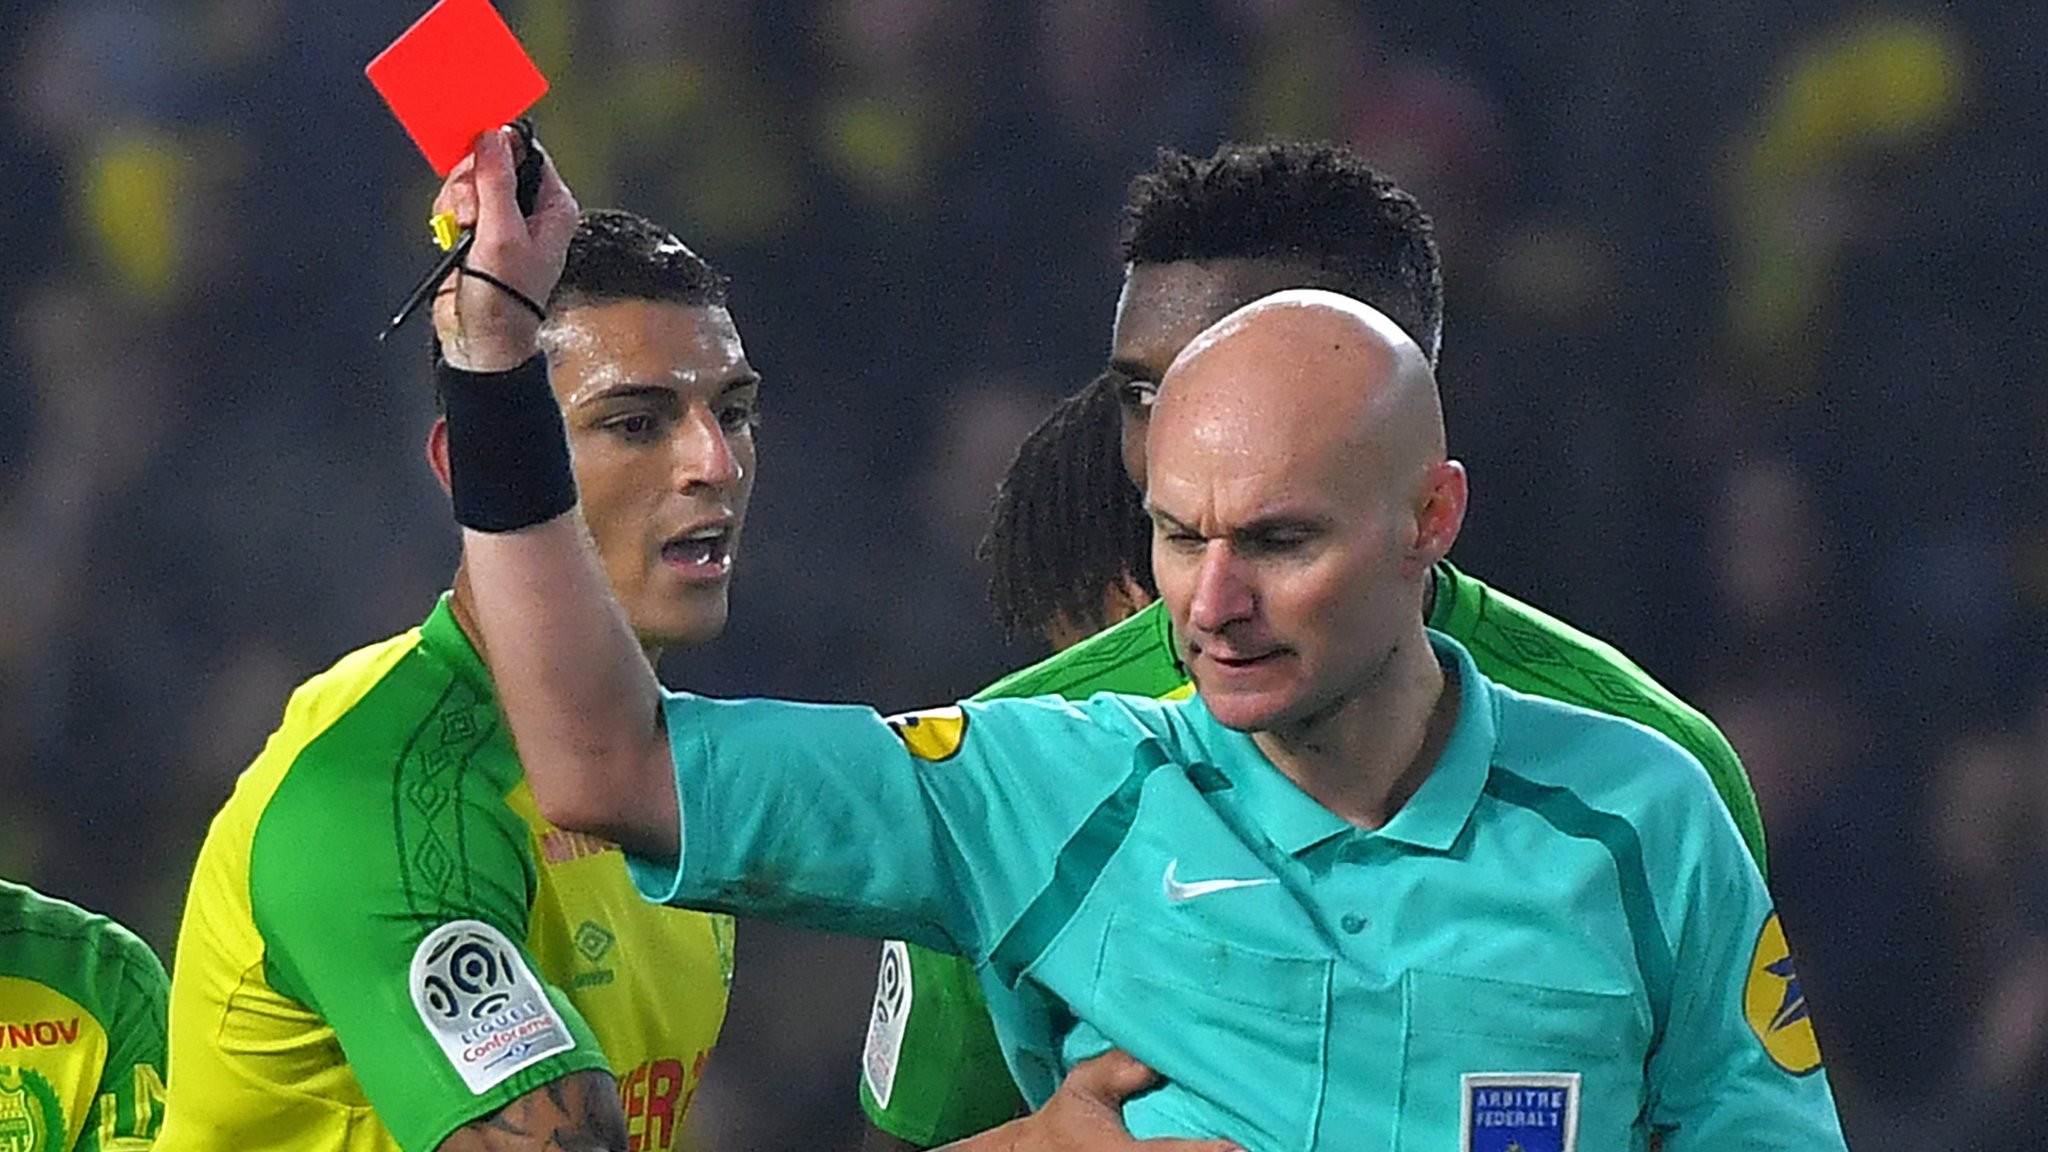 La insólita reacción de un árbitro que le lanza una patada a un jugador y lo termina expulsando del partido entre Nantes y PSG - News Mundo